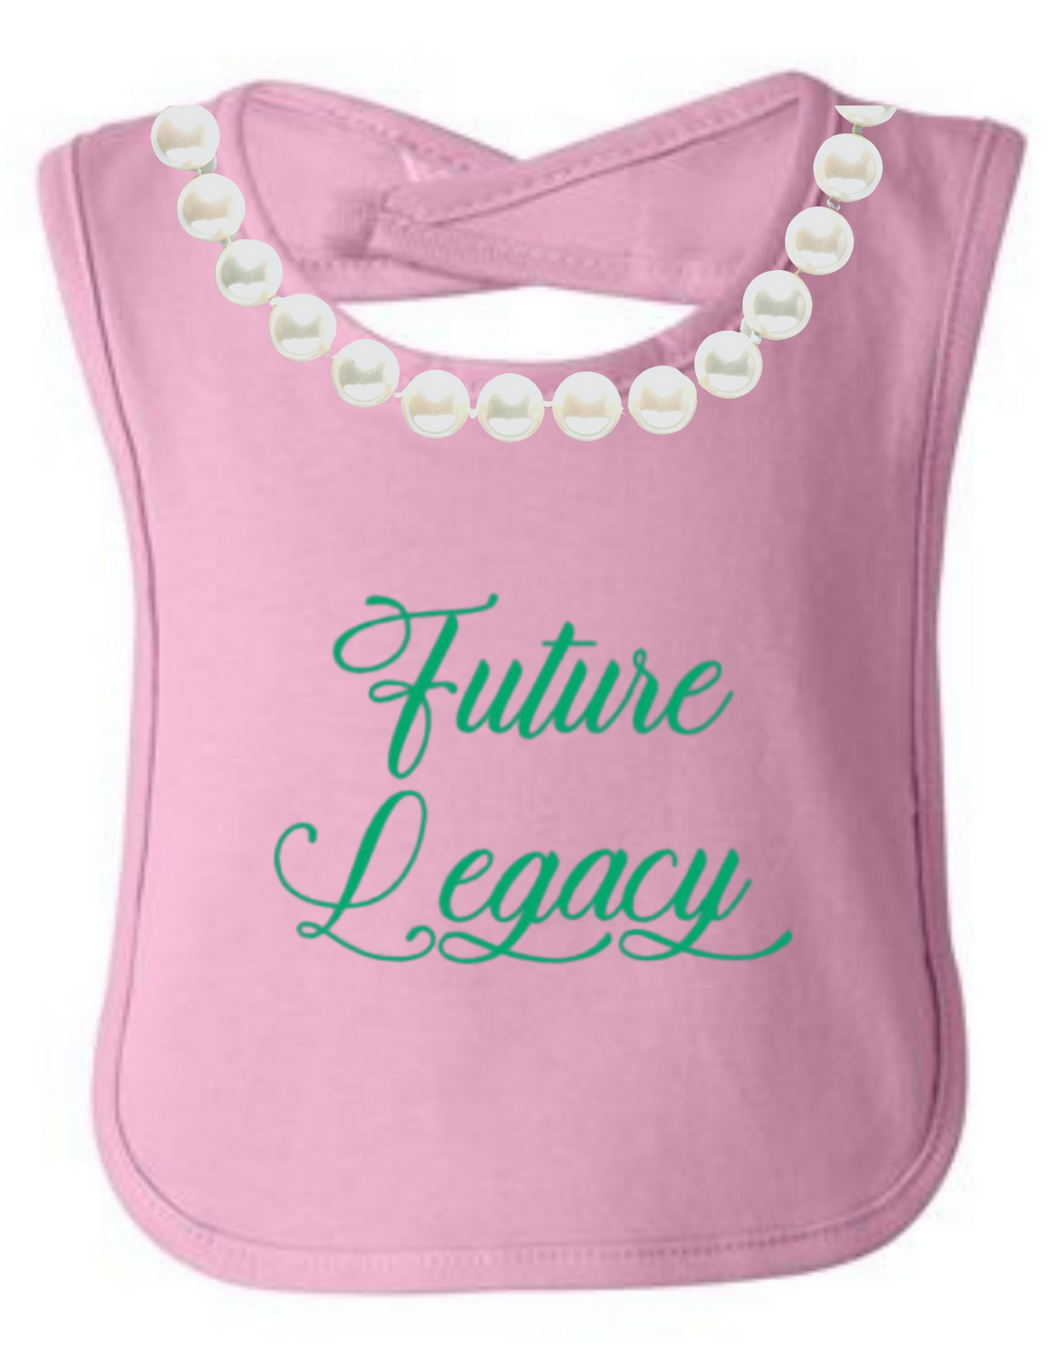 Future Legacy: Pearls Bib (Pink)